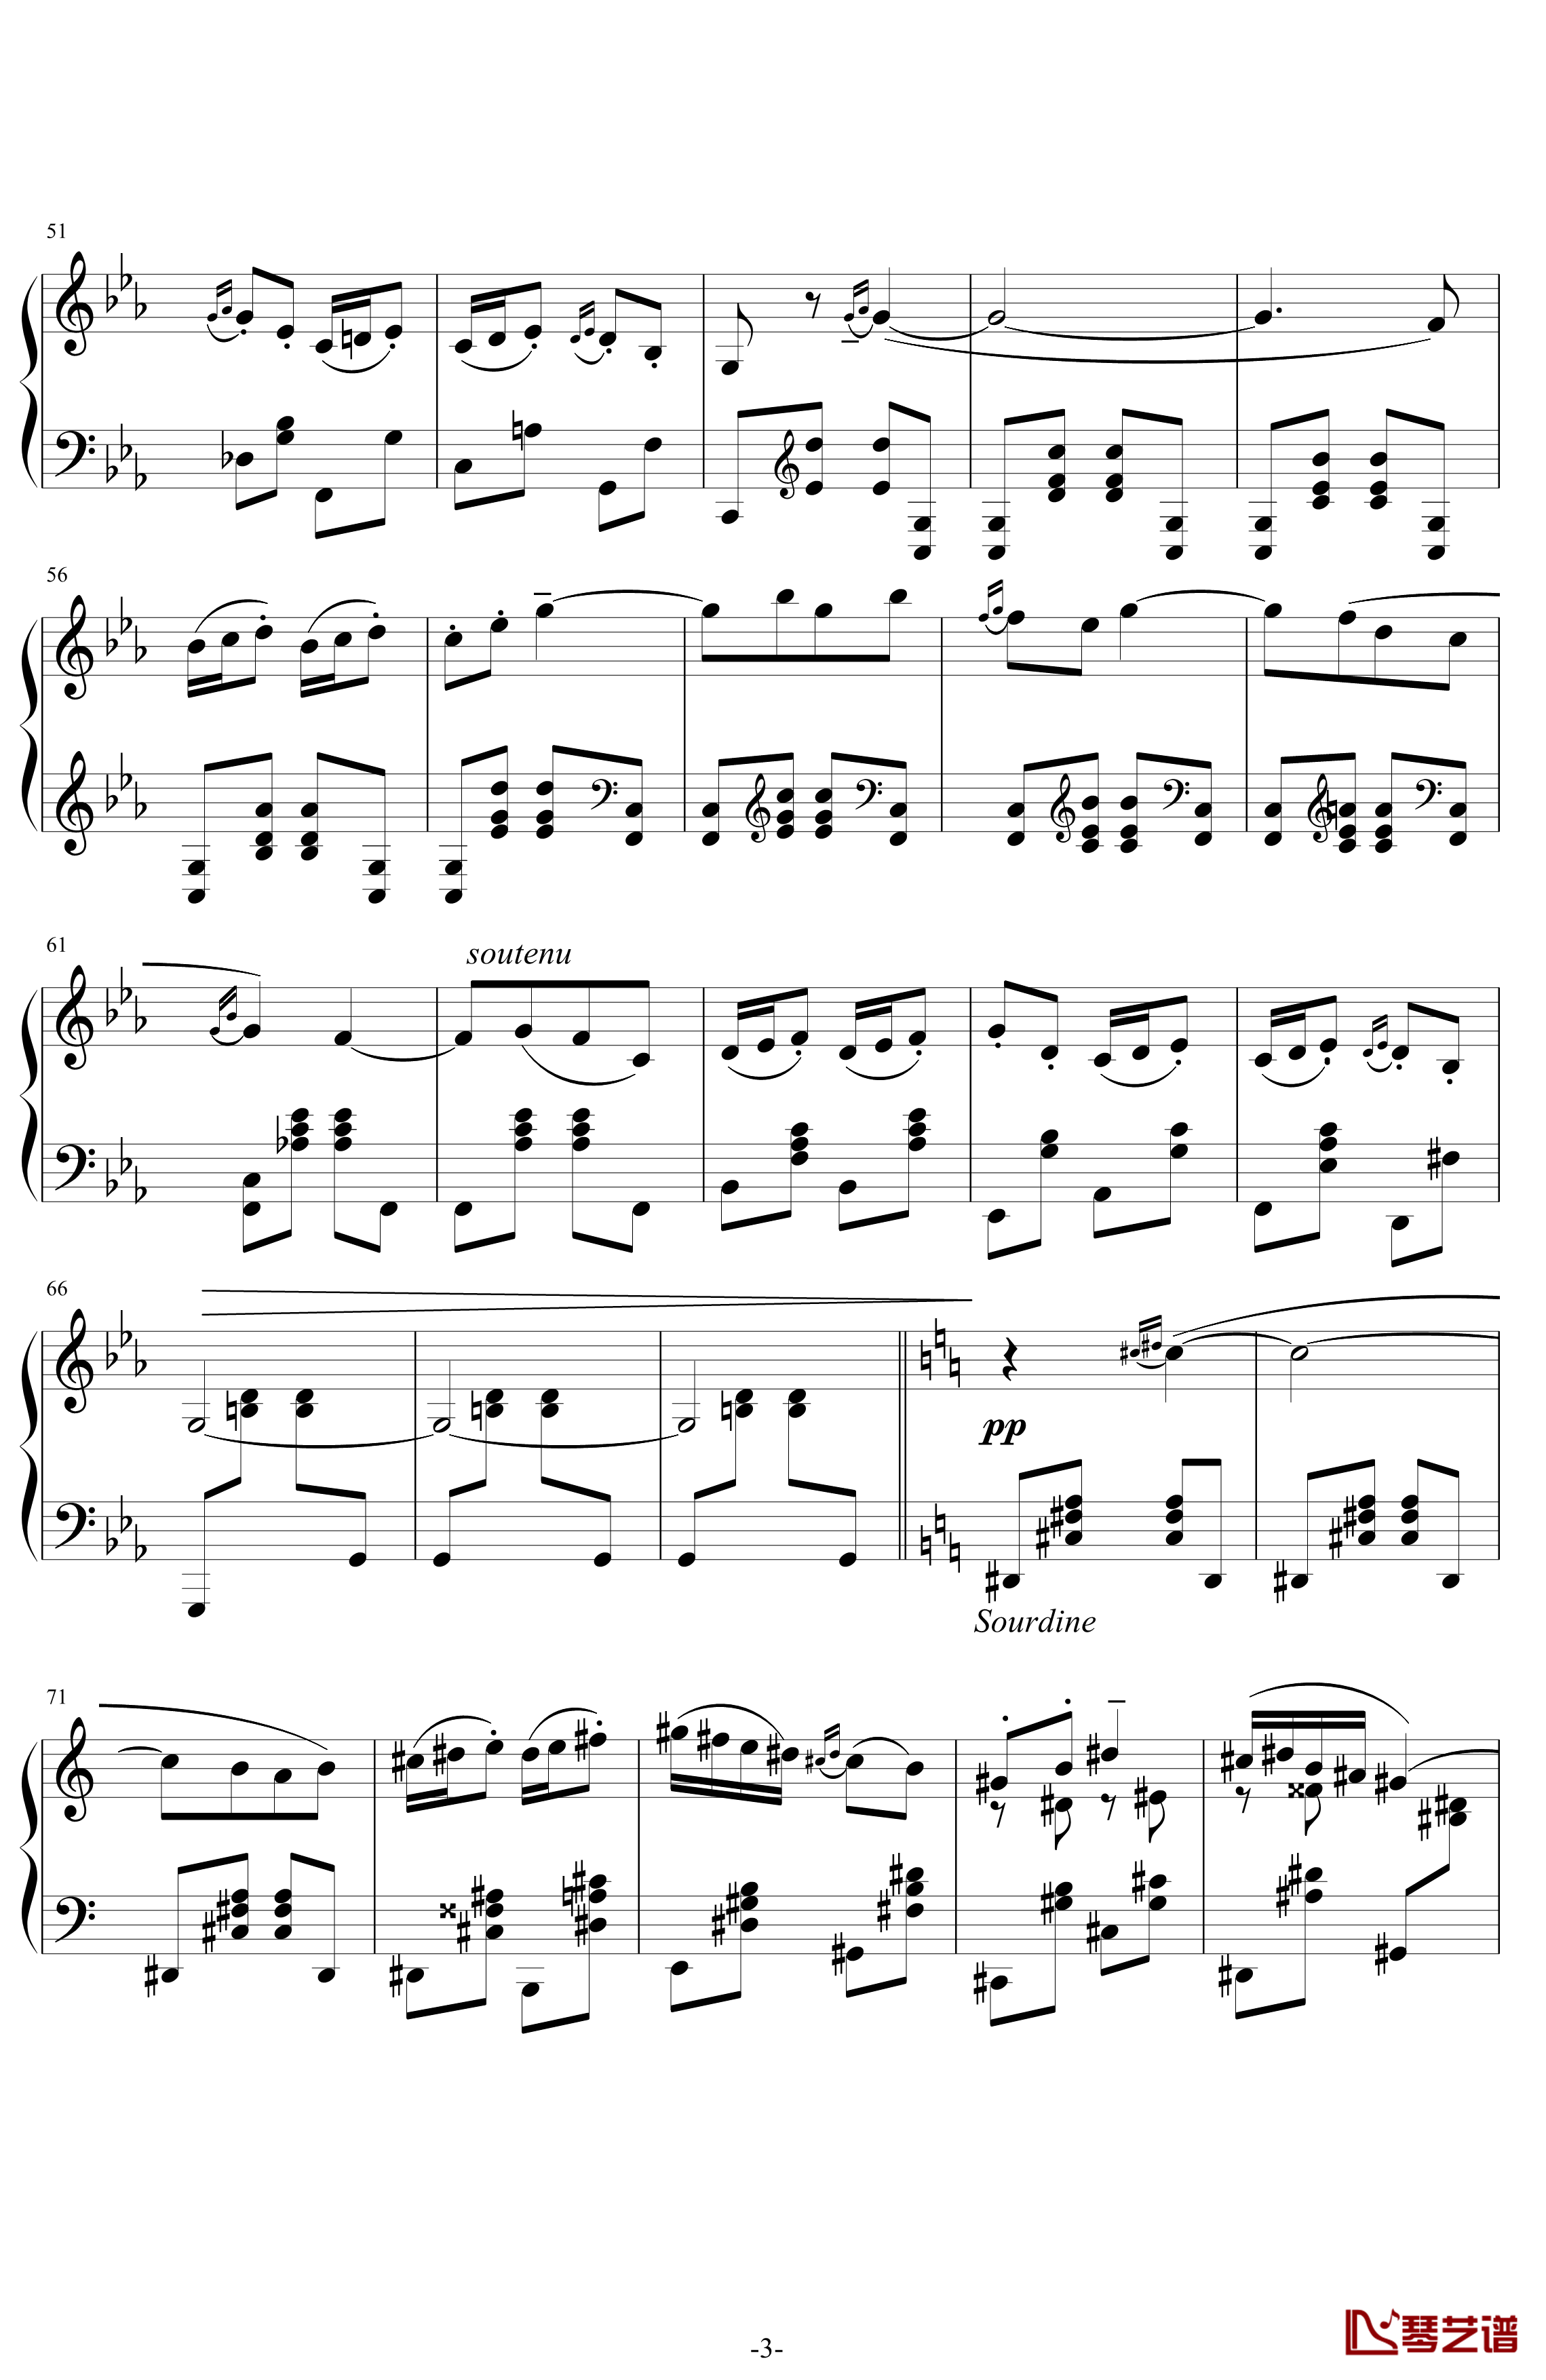 利戈顿舞曲钢琴谱-选自《库普兰之墓》-拉威尔-Ravel3